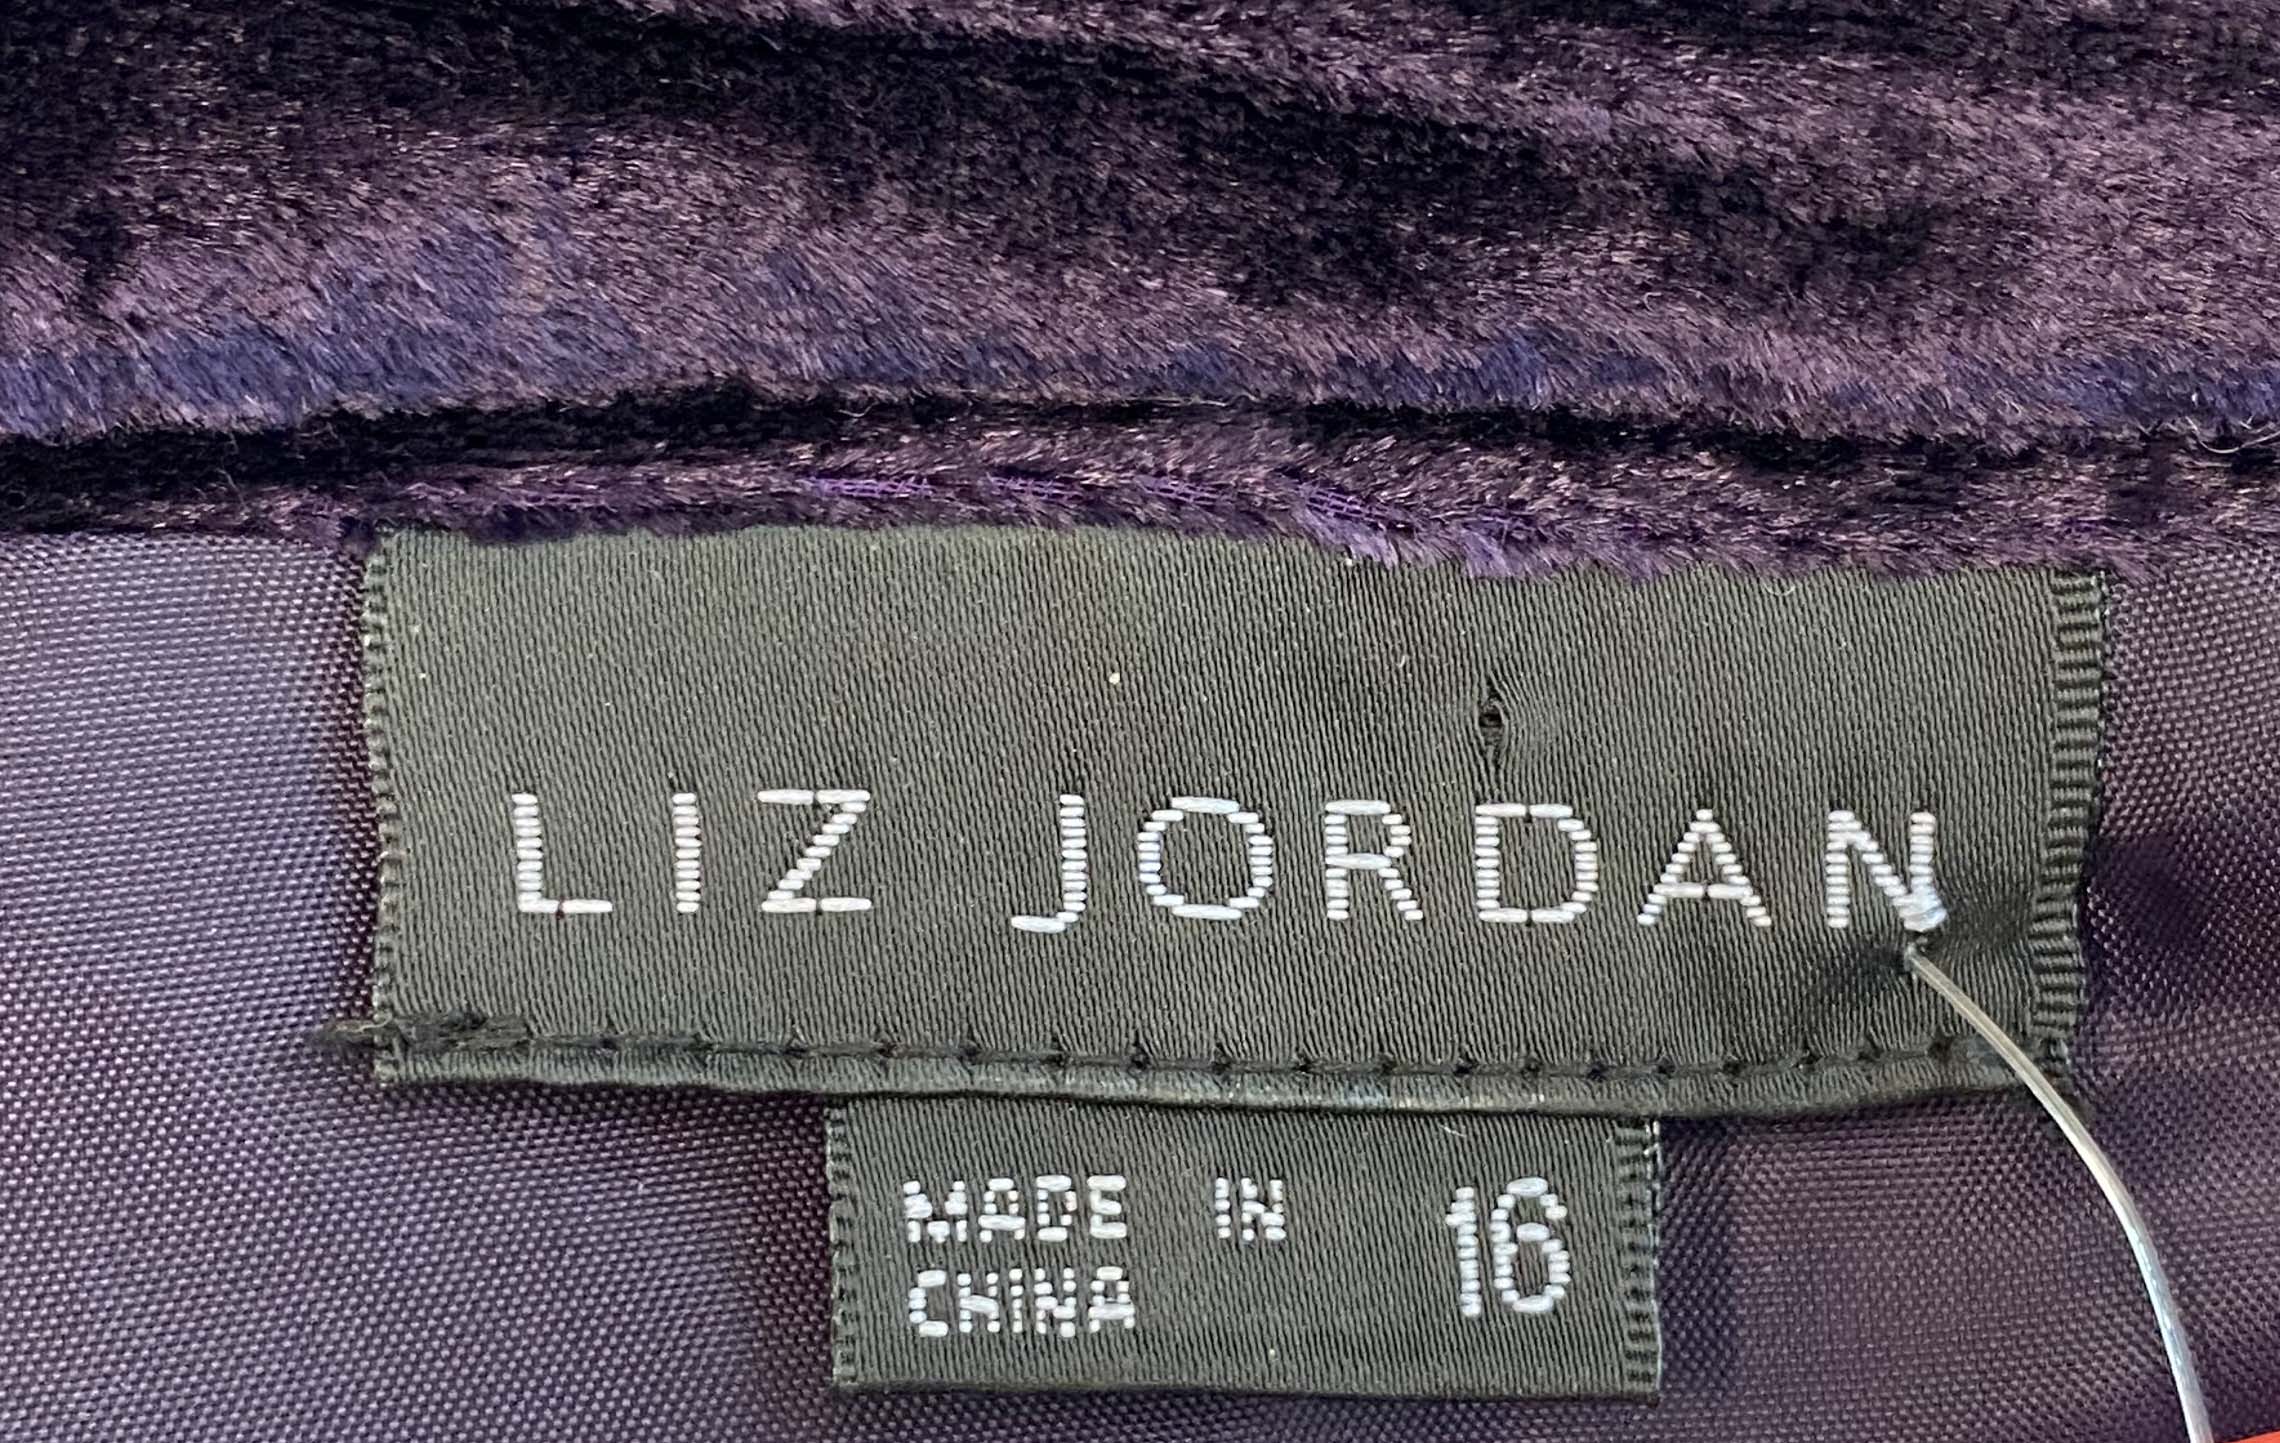 LIZ JORDAN purple skirt 